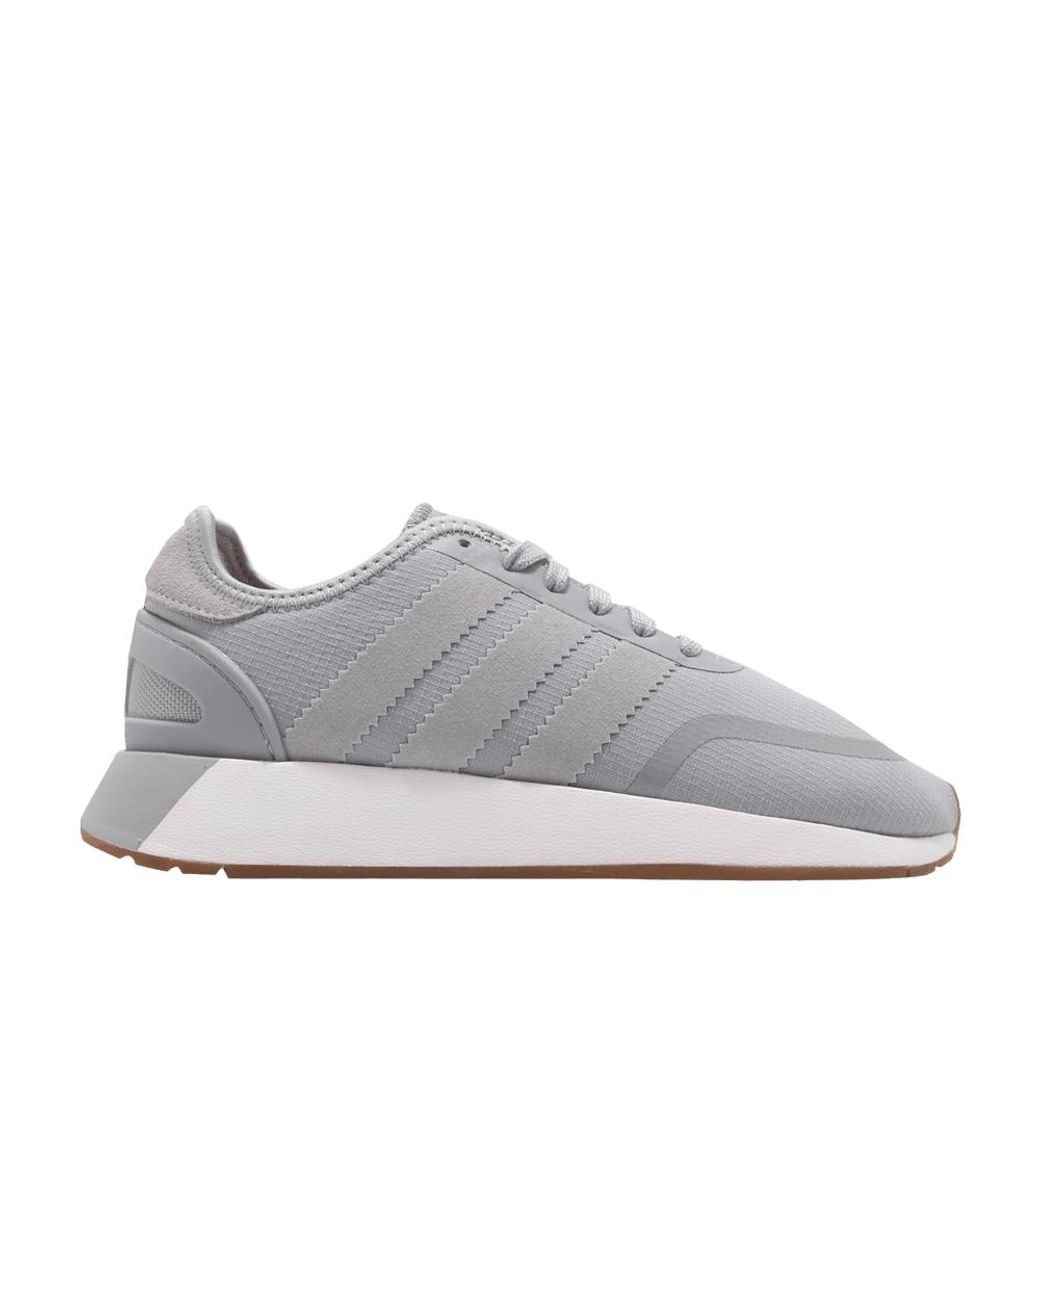 adidas N-5923 'grey Two' in Gray | Lyst